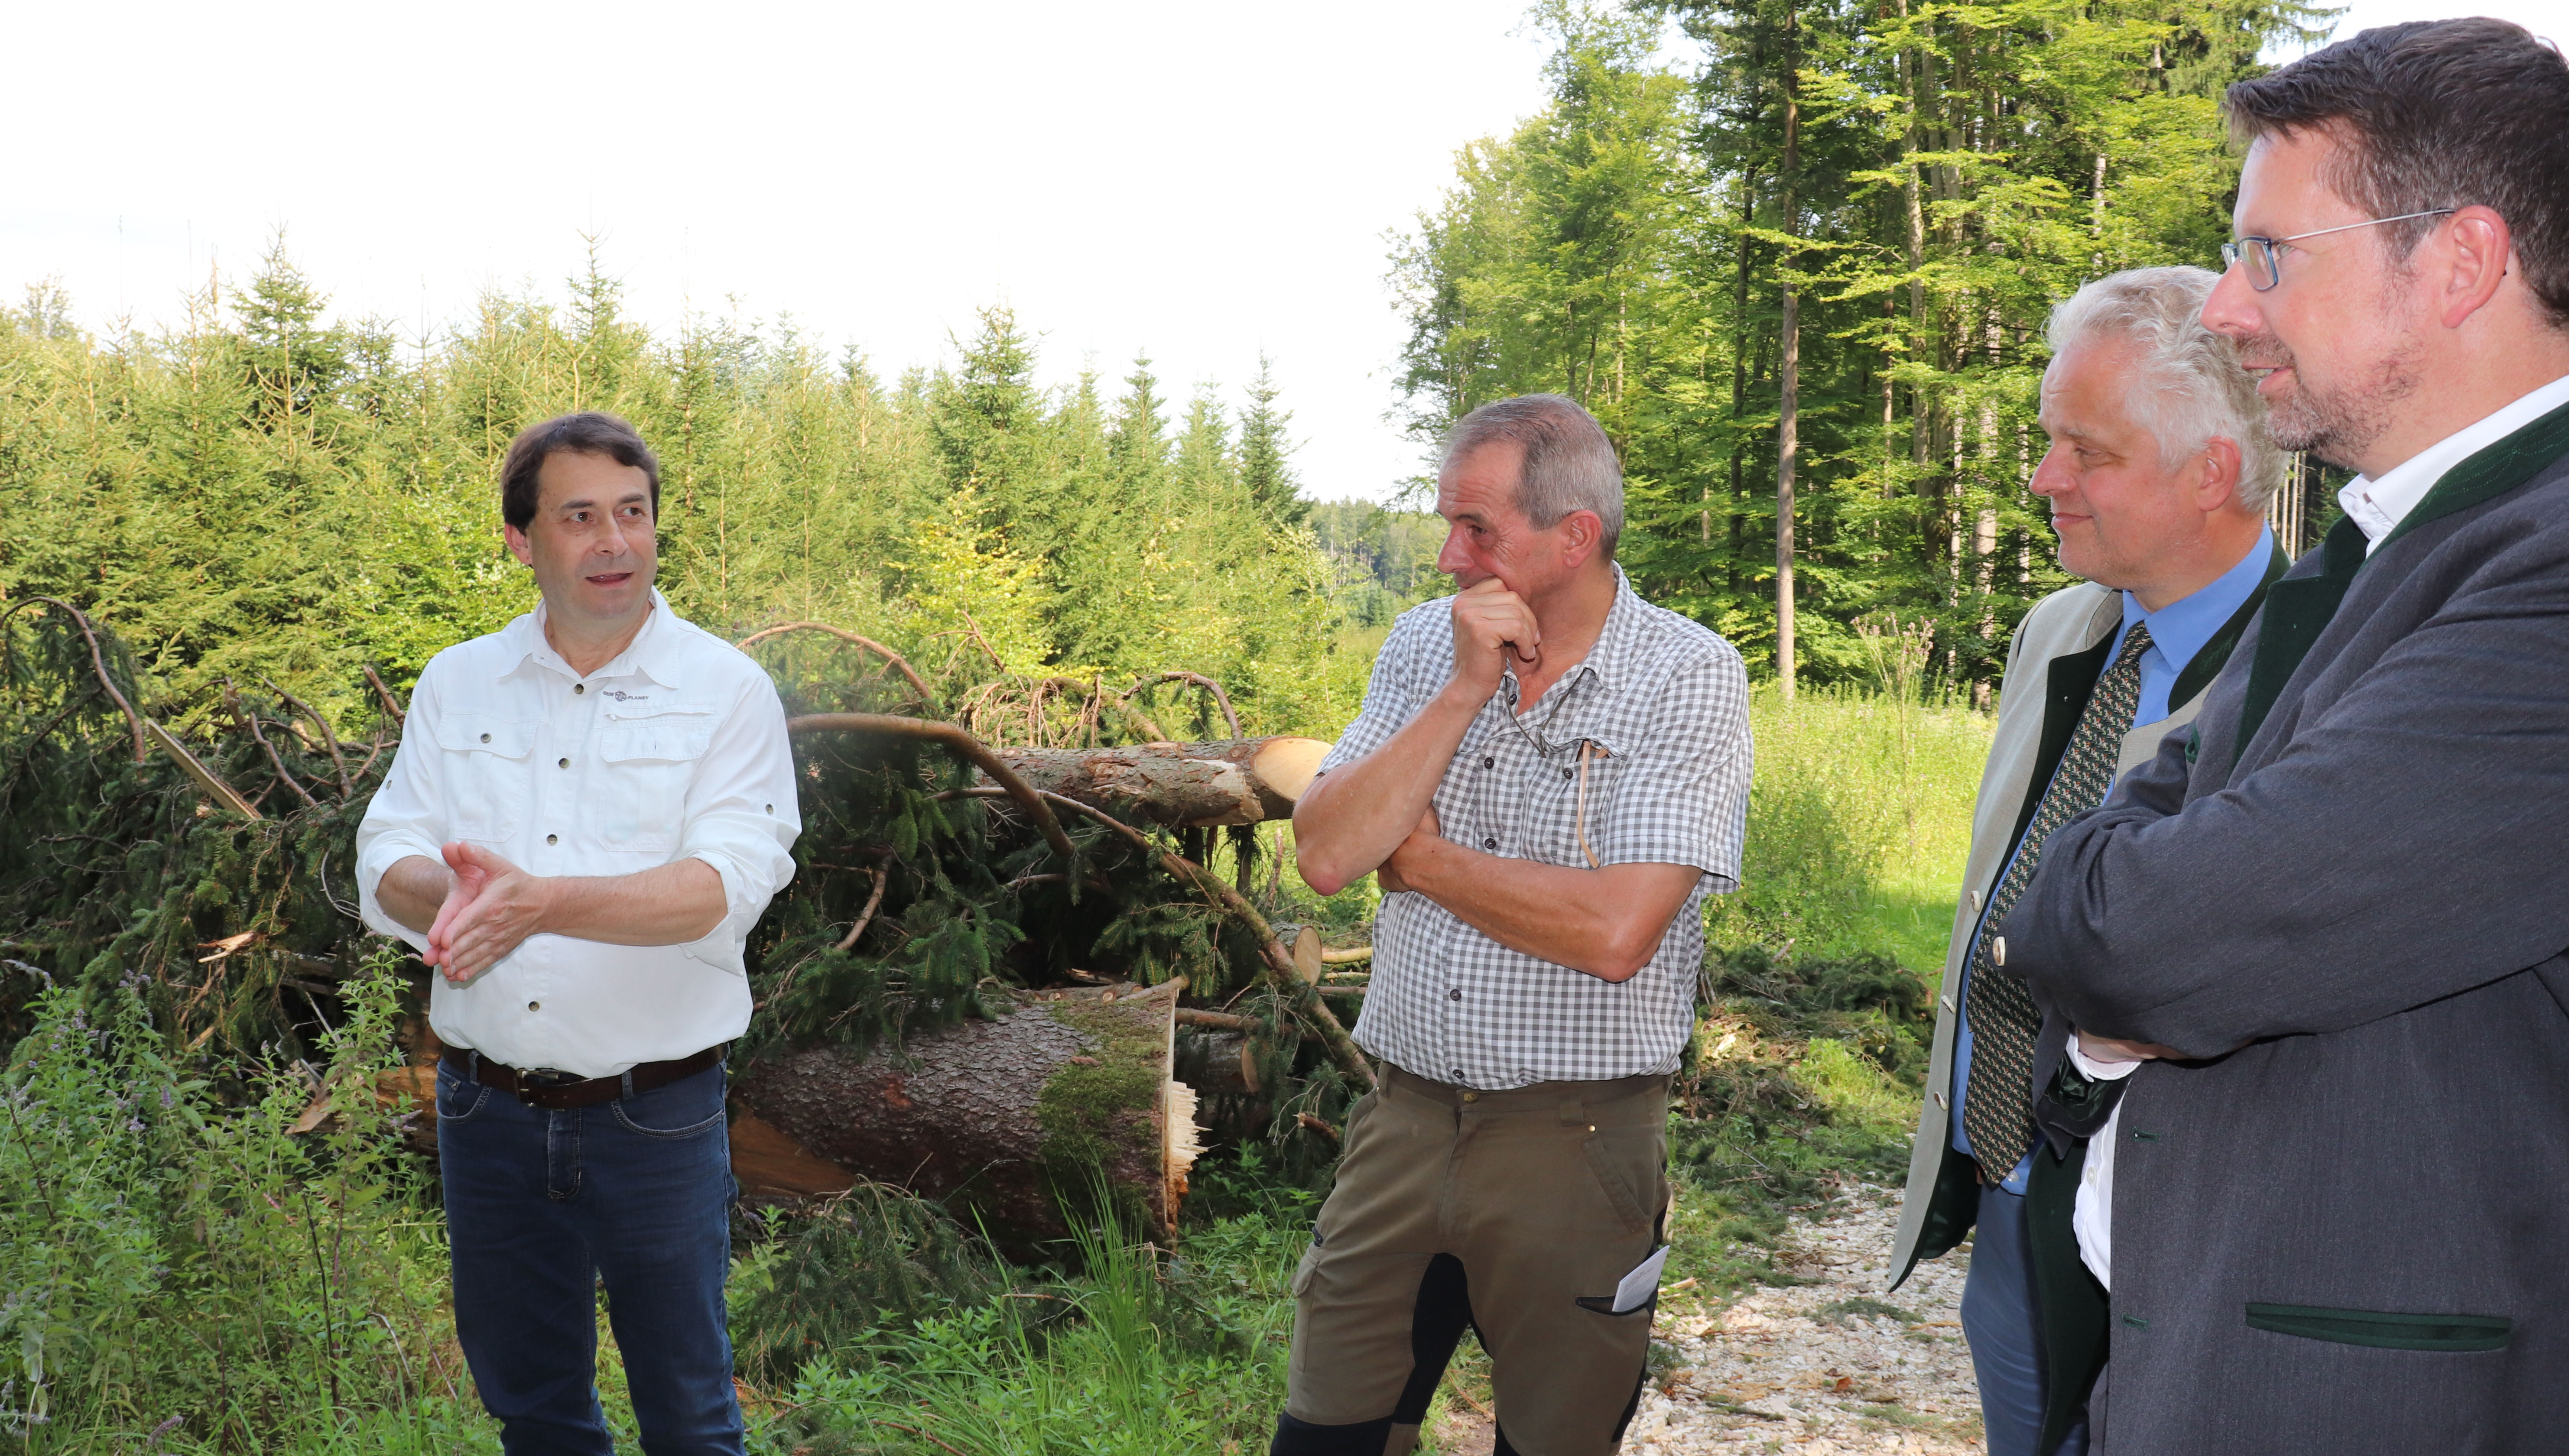 Stephan Stracke im Gespräch mit Ulrich Graf Fugger von Glött, dem Betriebsleiter Land und Forst der Fugger Günter Winkler und dem Bayerischen Waldpräsidenten Josef Ziegler (von rechts nach links).